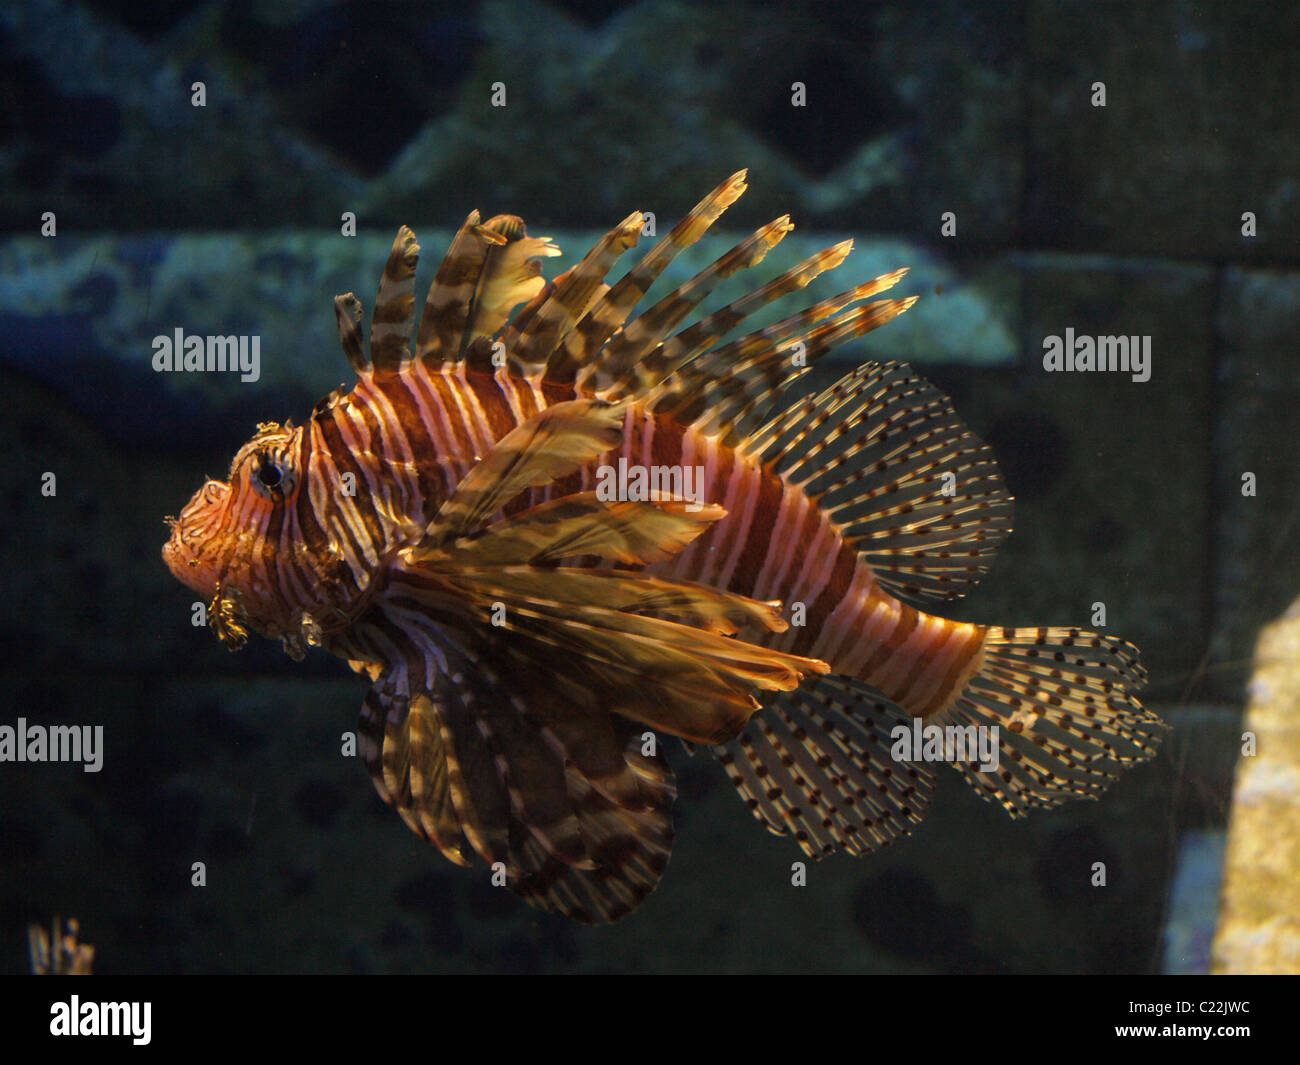 Ein einbunter Löwenfisch (Pterois) in einem Becken. Auch bekannt als Glühwürmchen, Turkeyfish, Tastyfish, oder Schmetterling-Kabeljau. Stockfoto